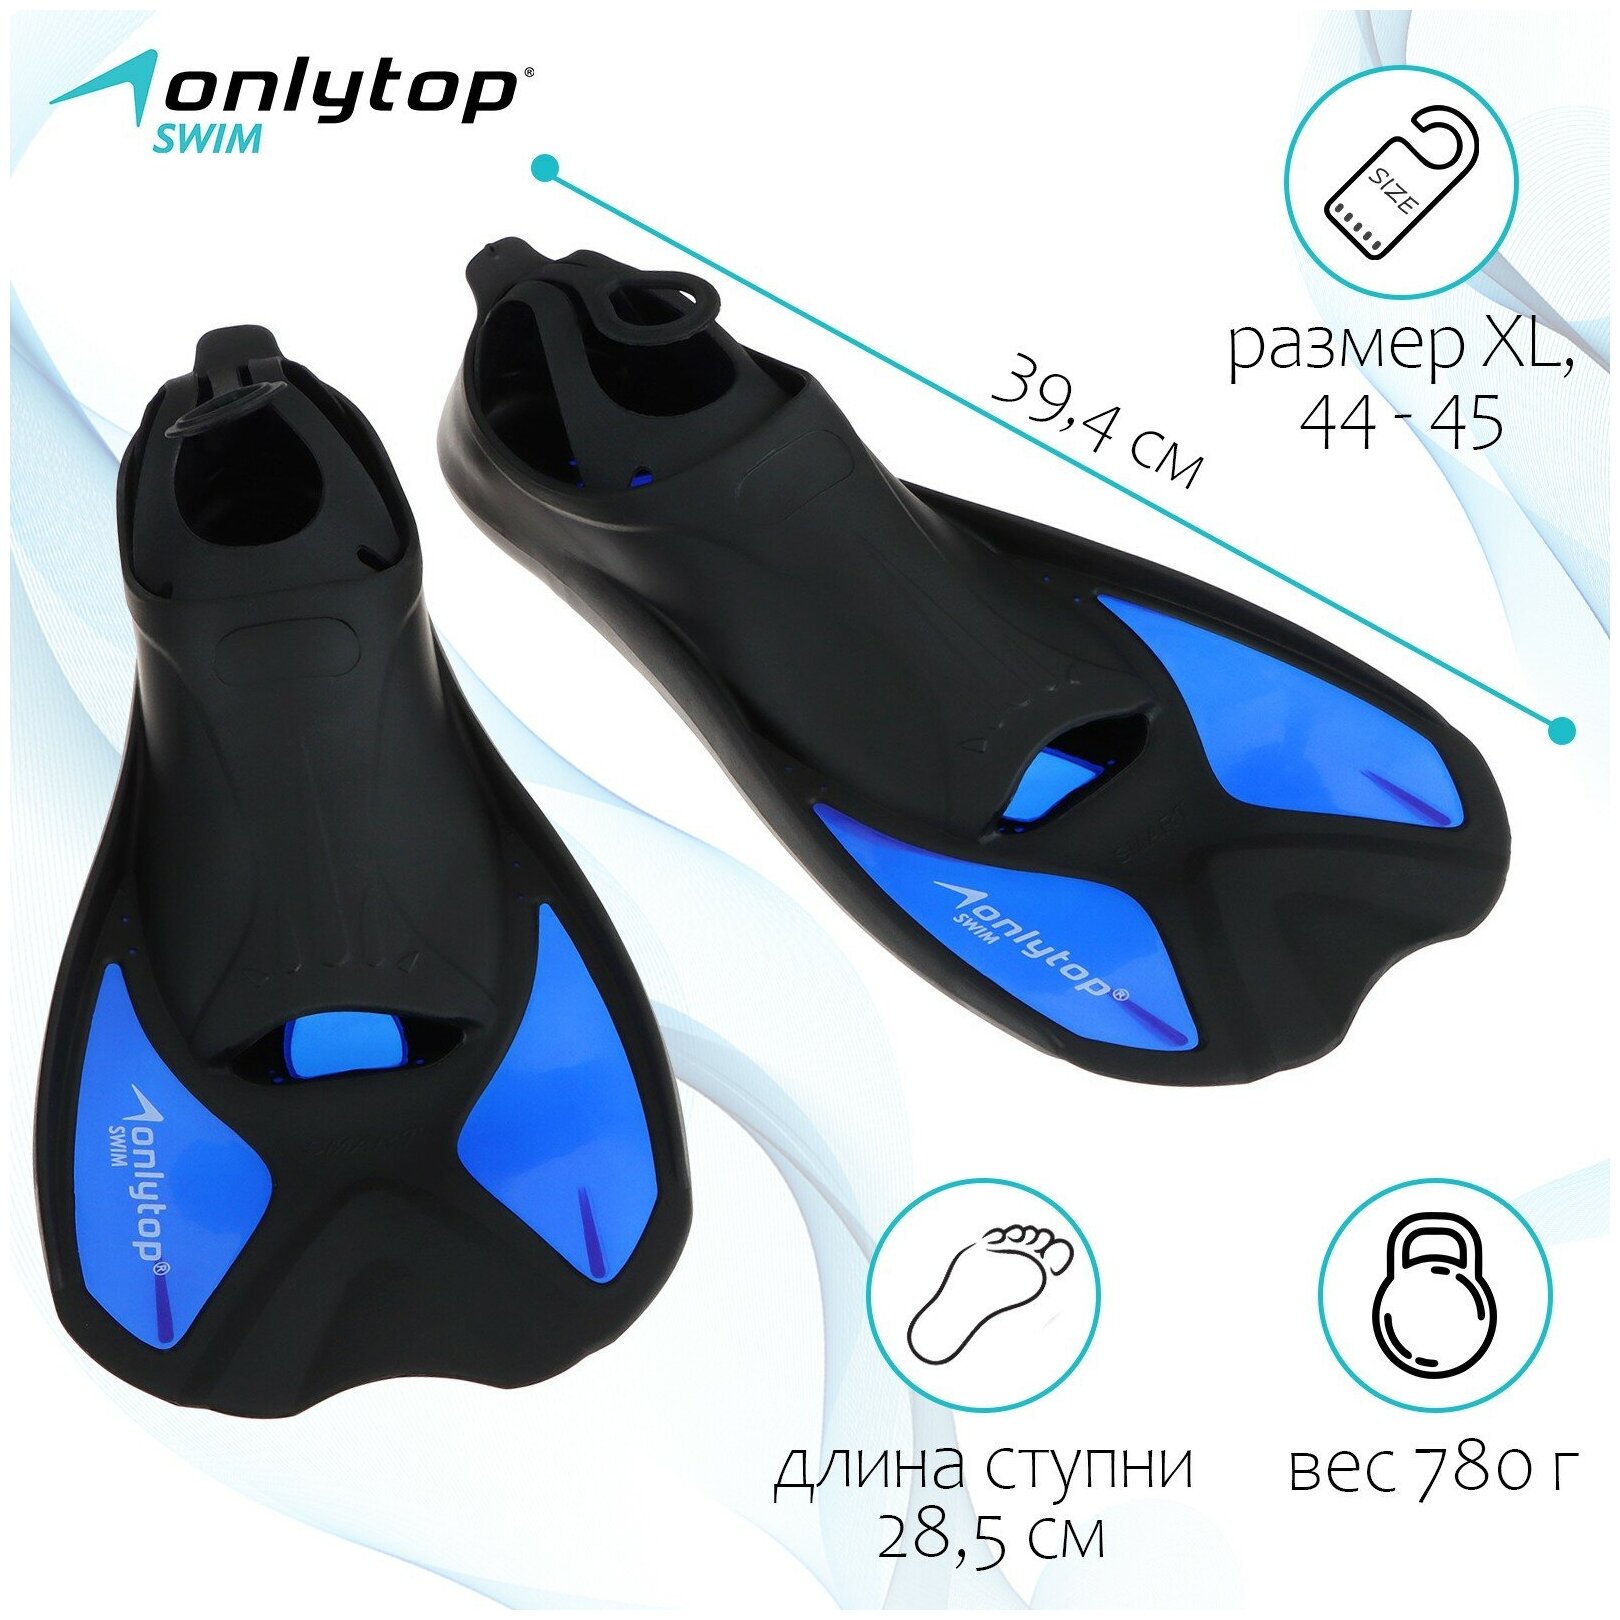 Ласты ONLYTOP, для плавания, размер XL (44-45), цвет черный, синий